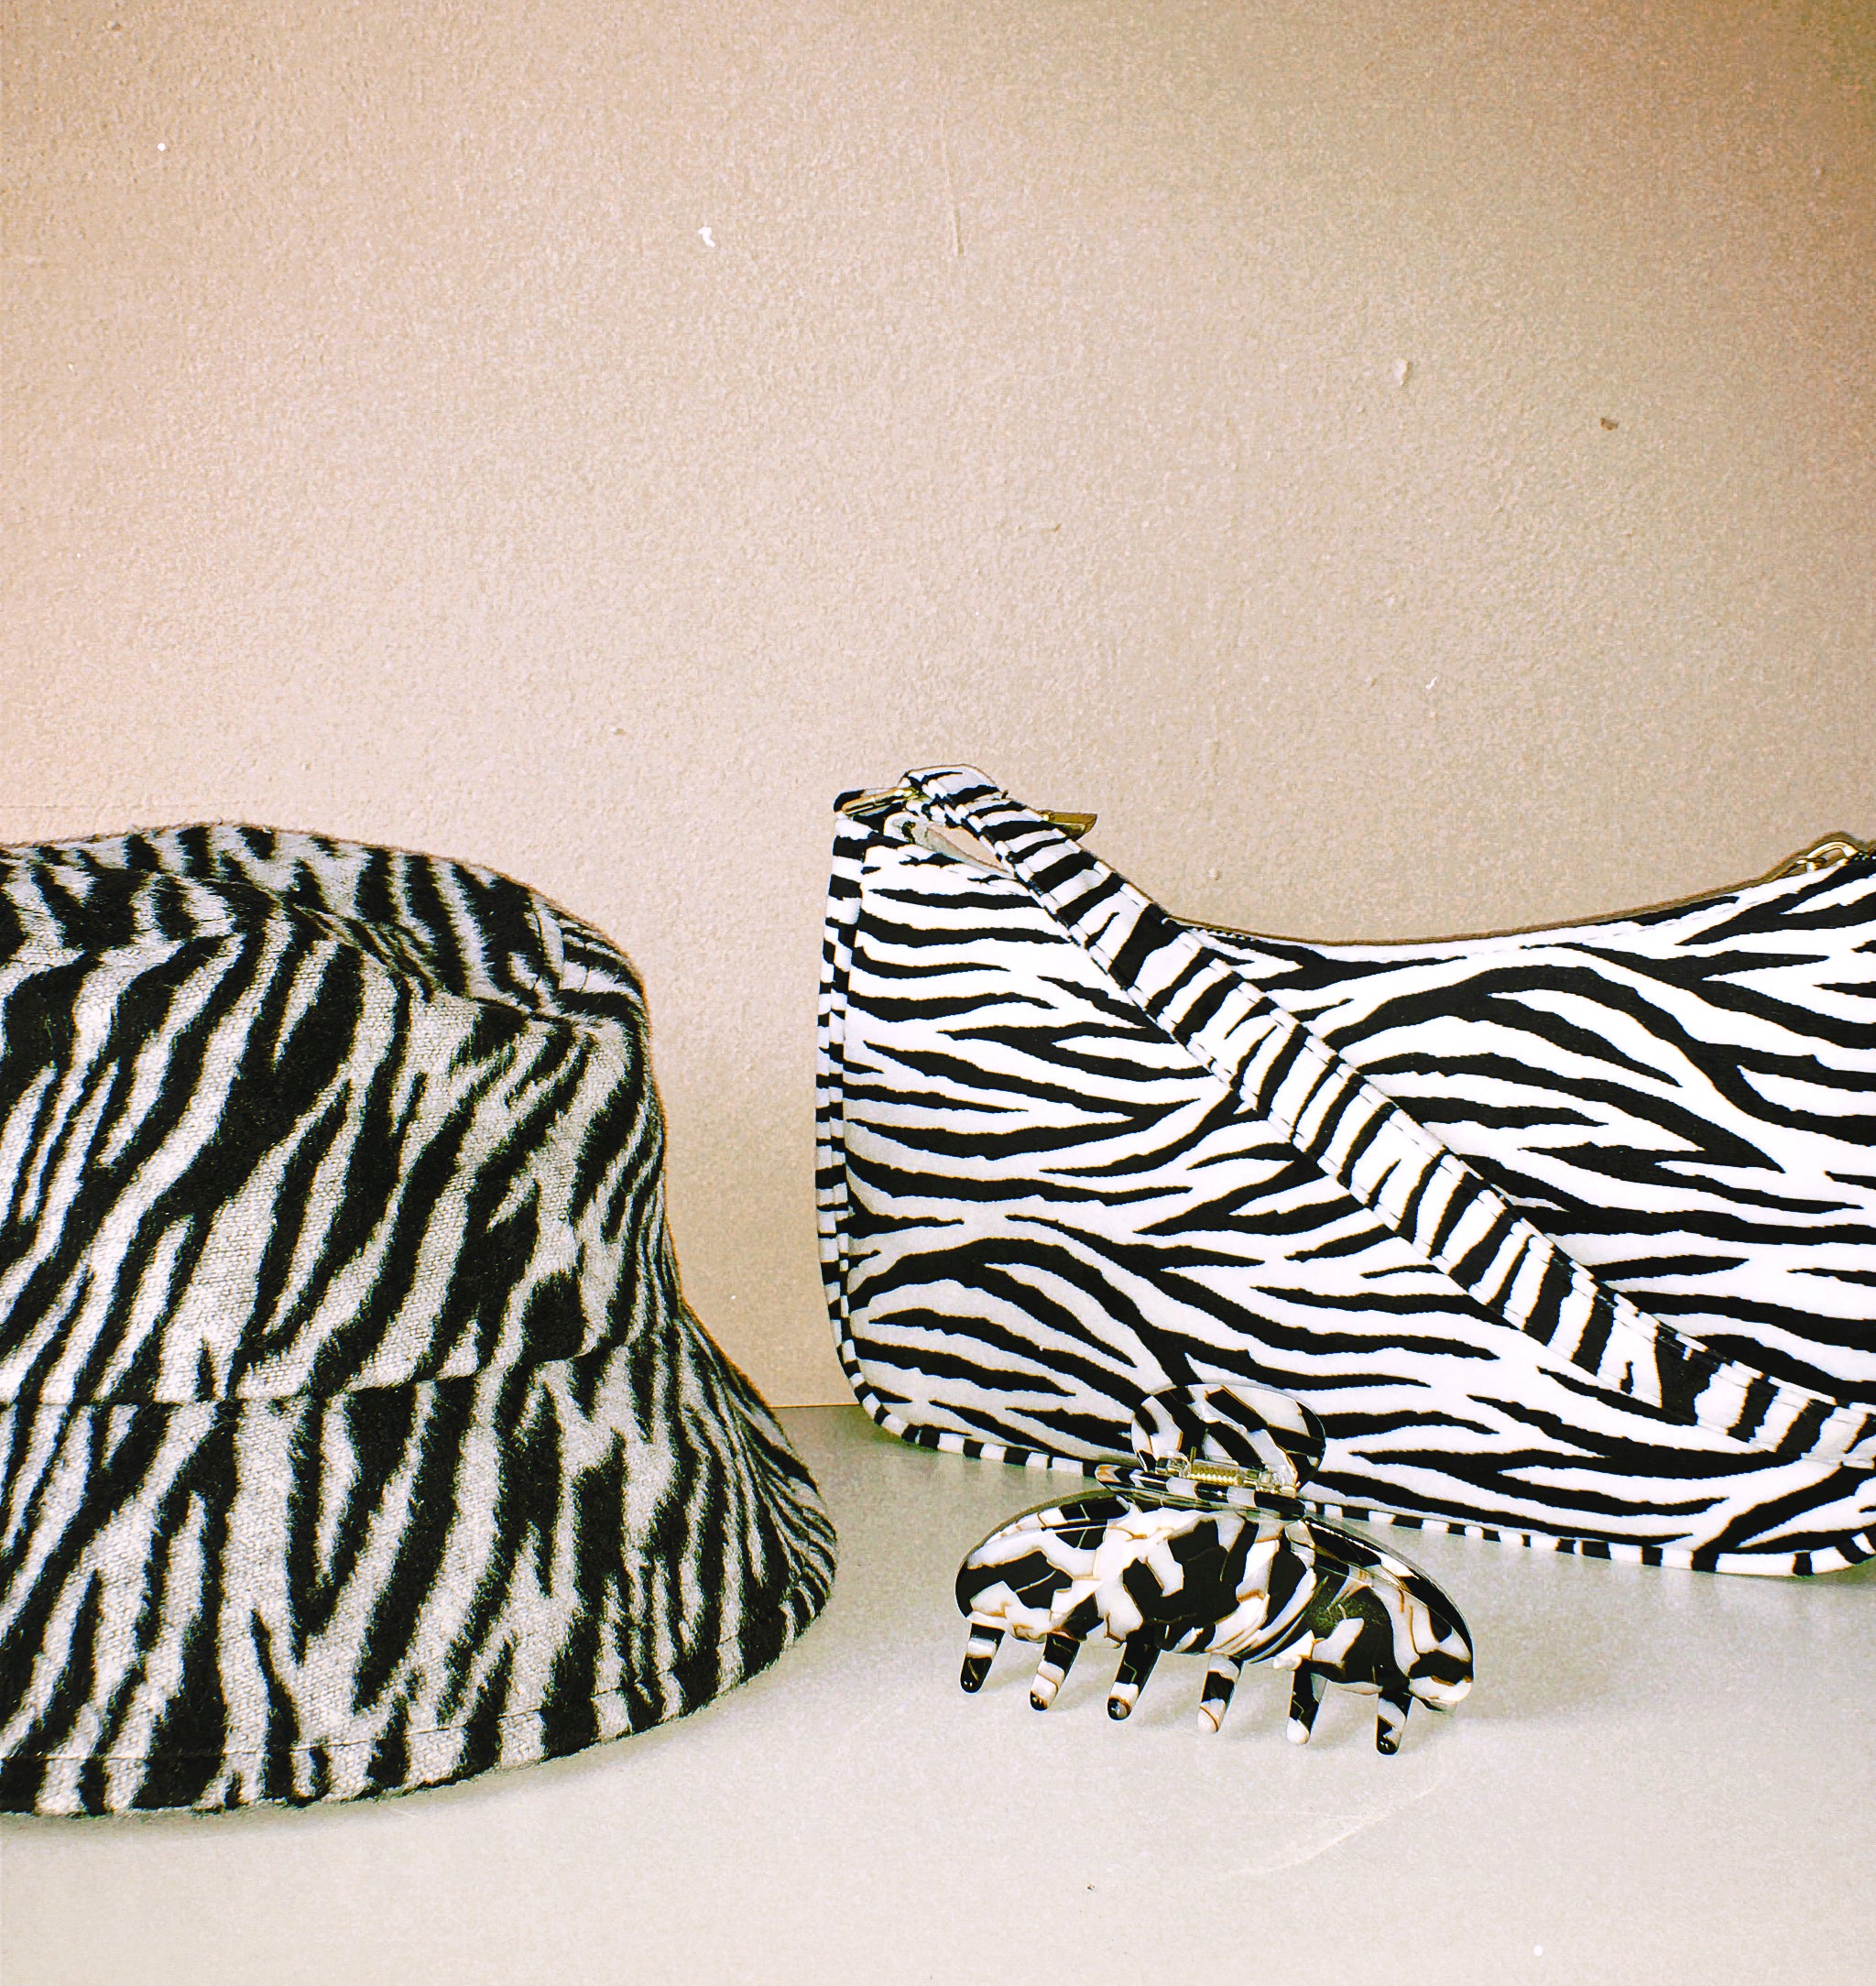 The Zebra Baguette Bag by Veronique